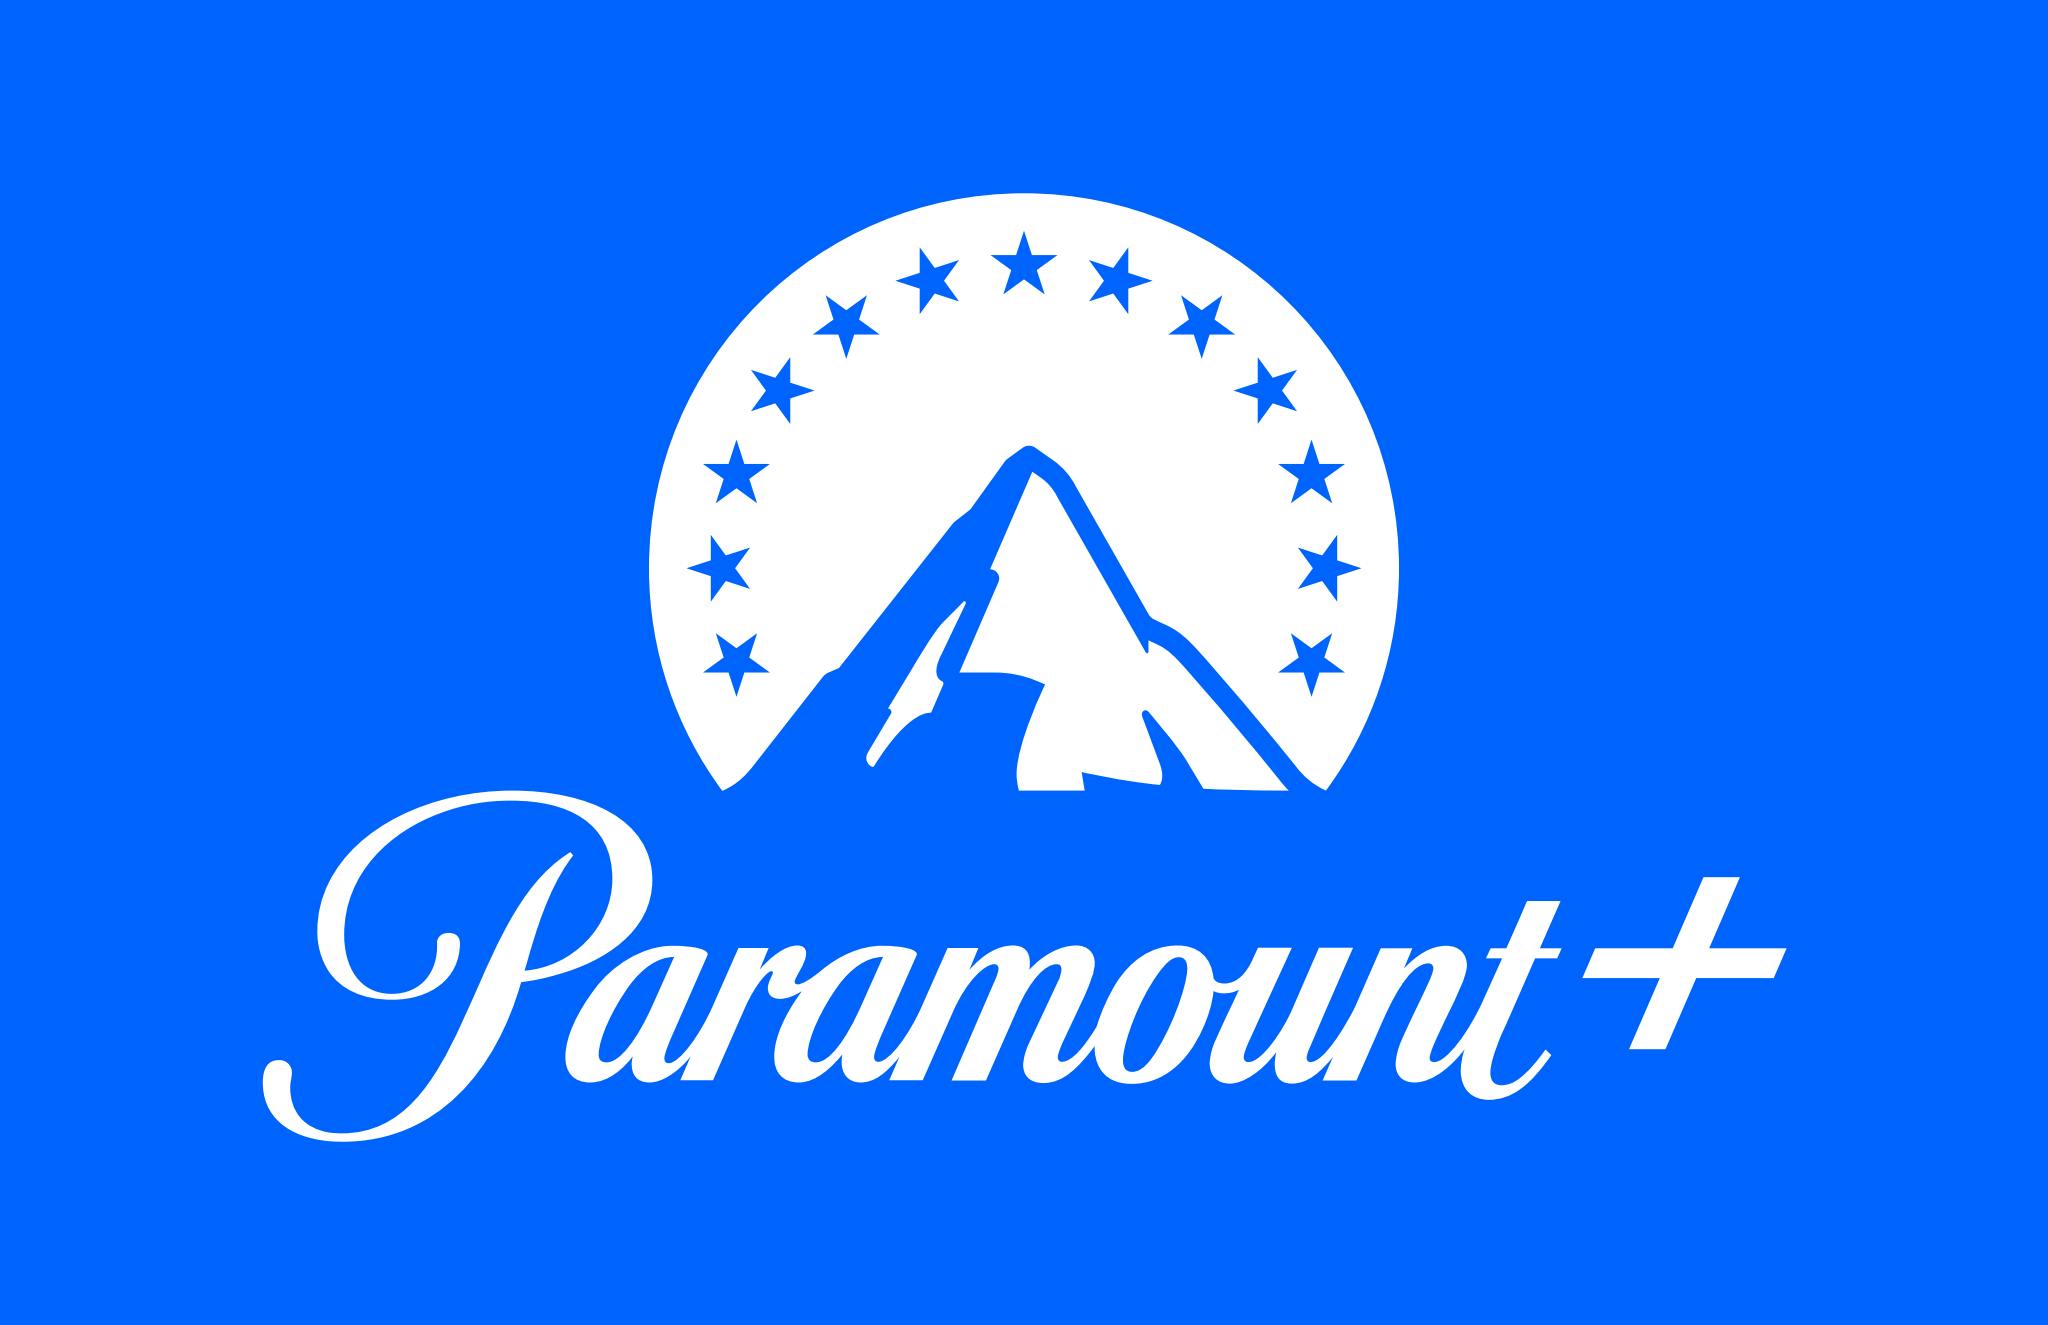 blaa paramount logo